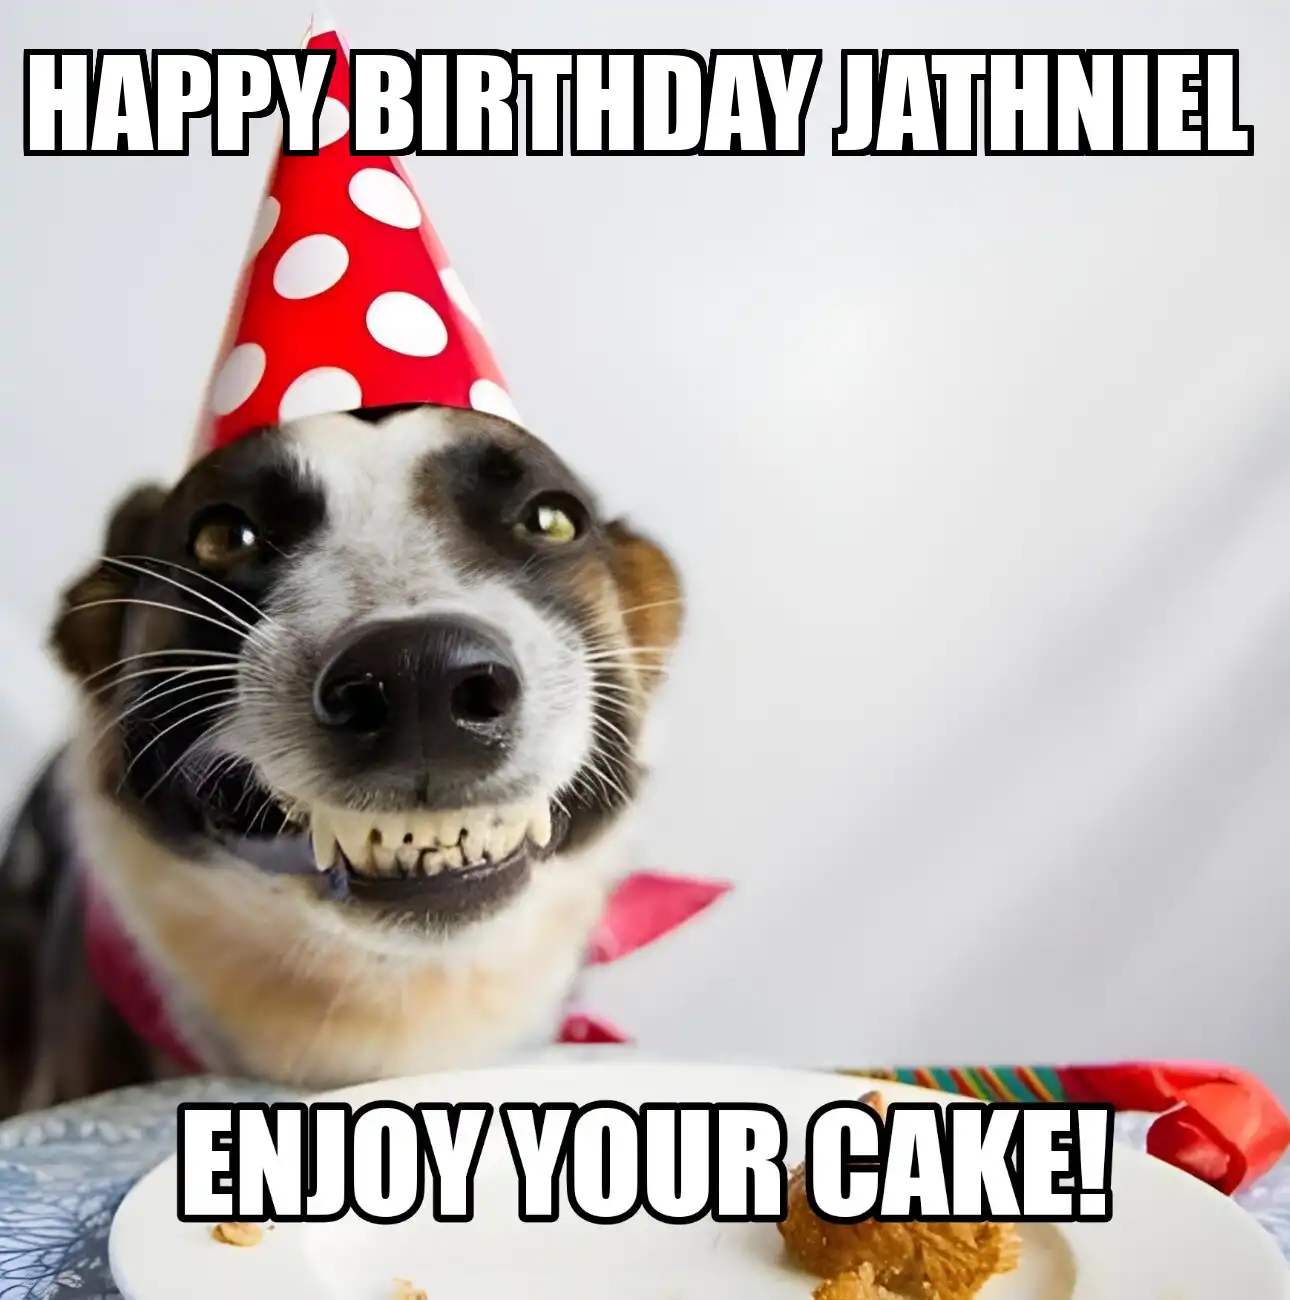 Happy Birthday Jathniel Enjoy Your Cake Dog Meme